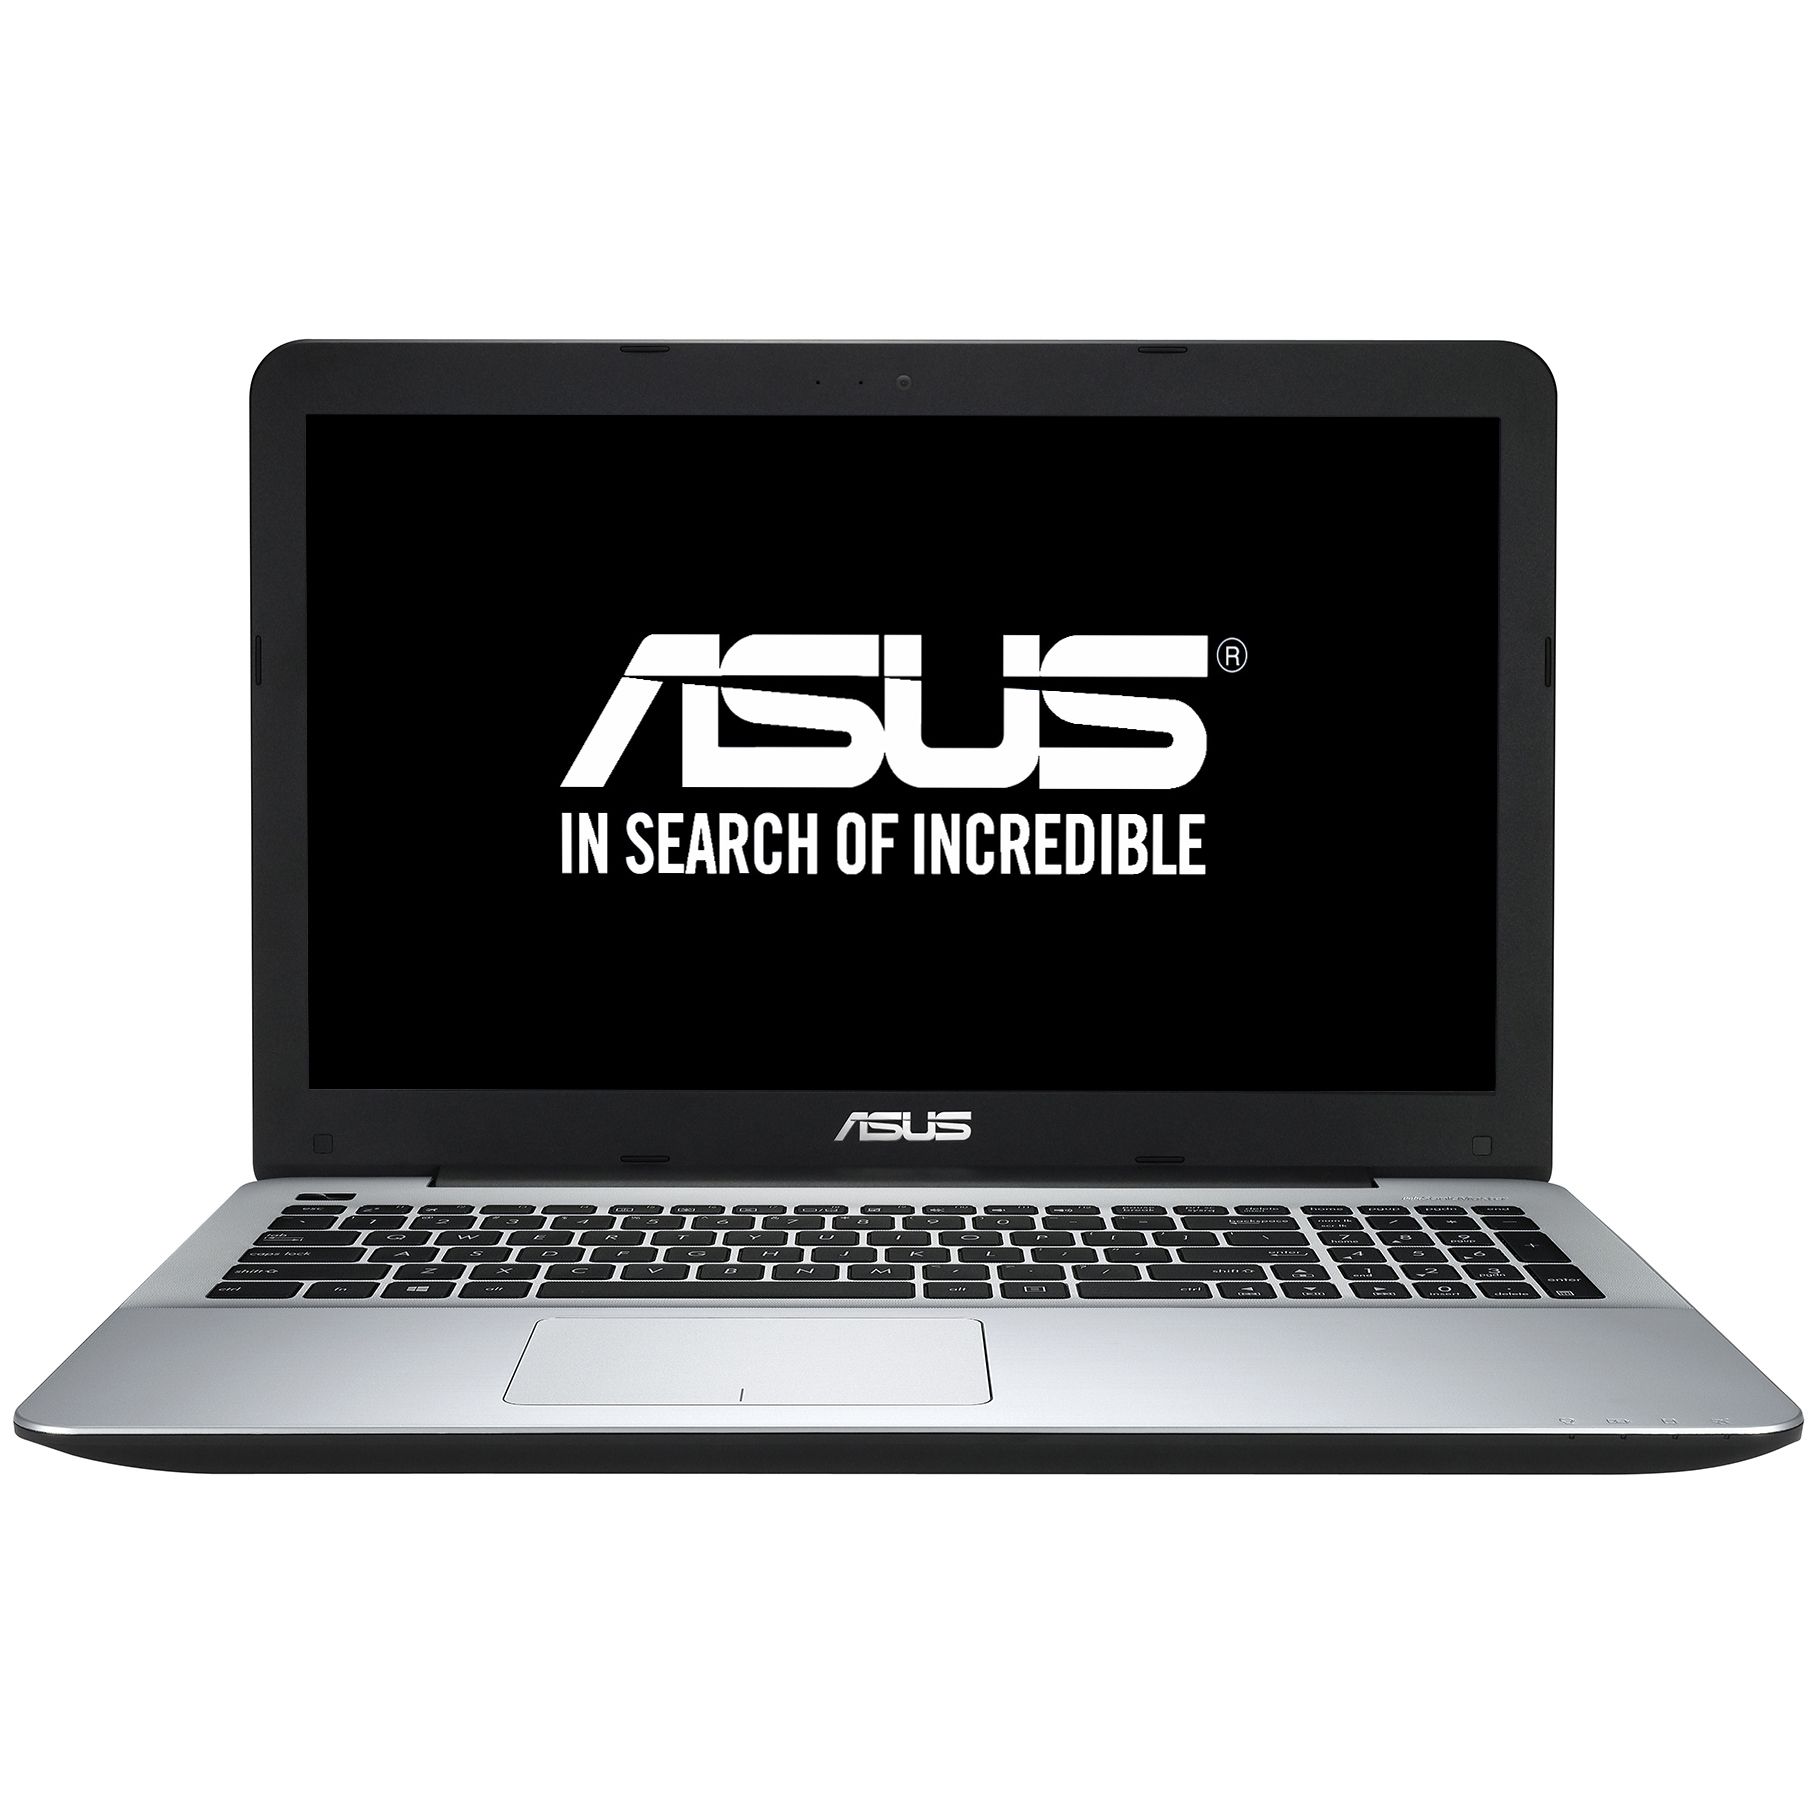  Laptop Asus X555LJ-XX443D, Intel Core i3-5005U, 4GB DDR3, HDD 500GB, nVidia GeForce GT 920M 2GB, Free DOS 